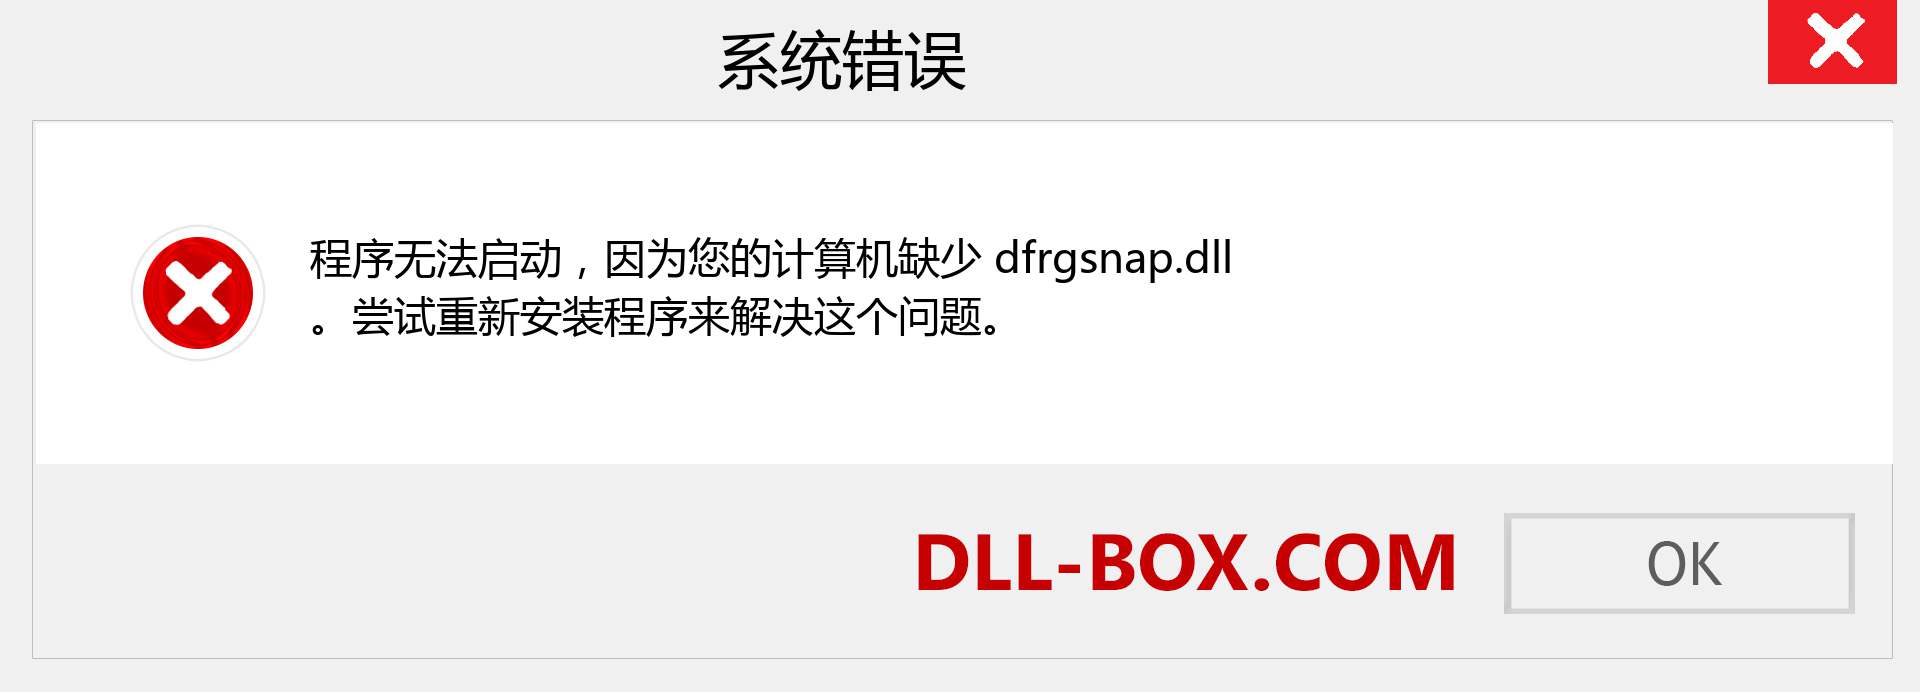 dfrgsnap.dll 文件丢失？。 适用于 Windows 7、8、10 的下载 - 修复 Windows、照片、图像上的 dfrgsnap dll 丢失错误